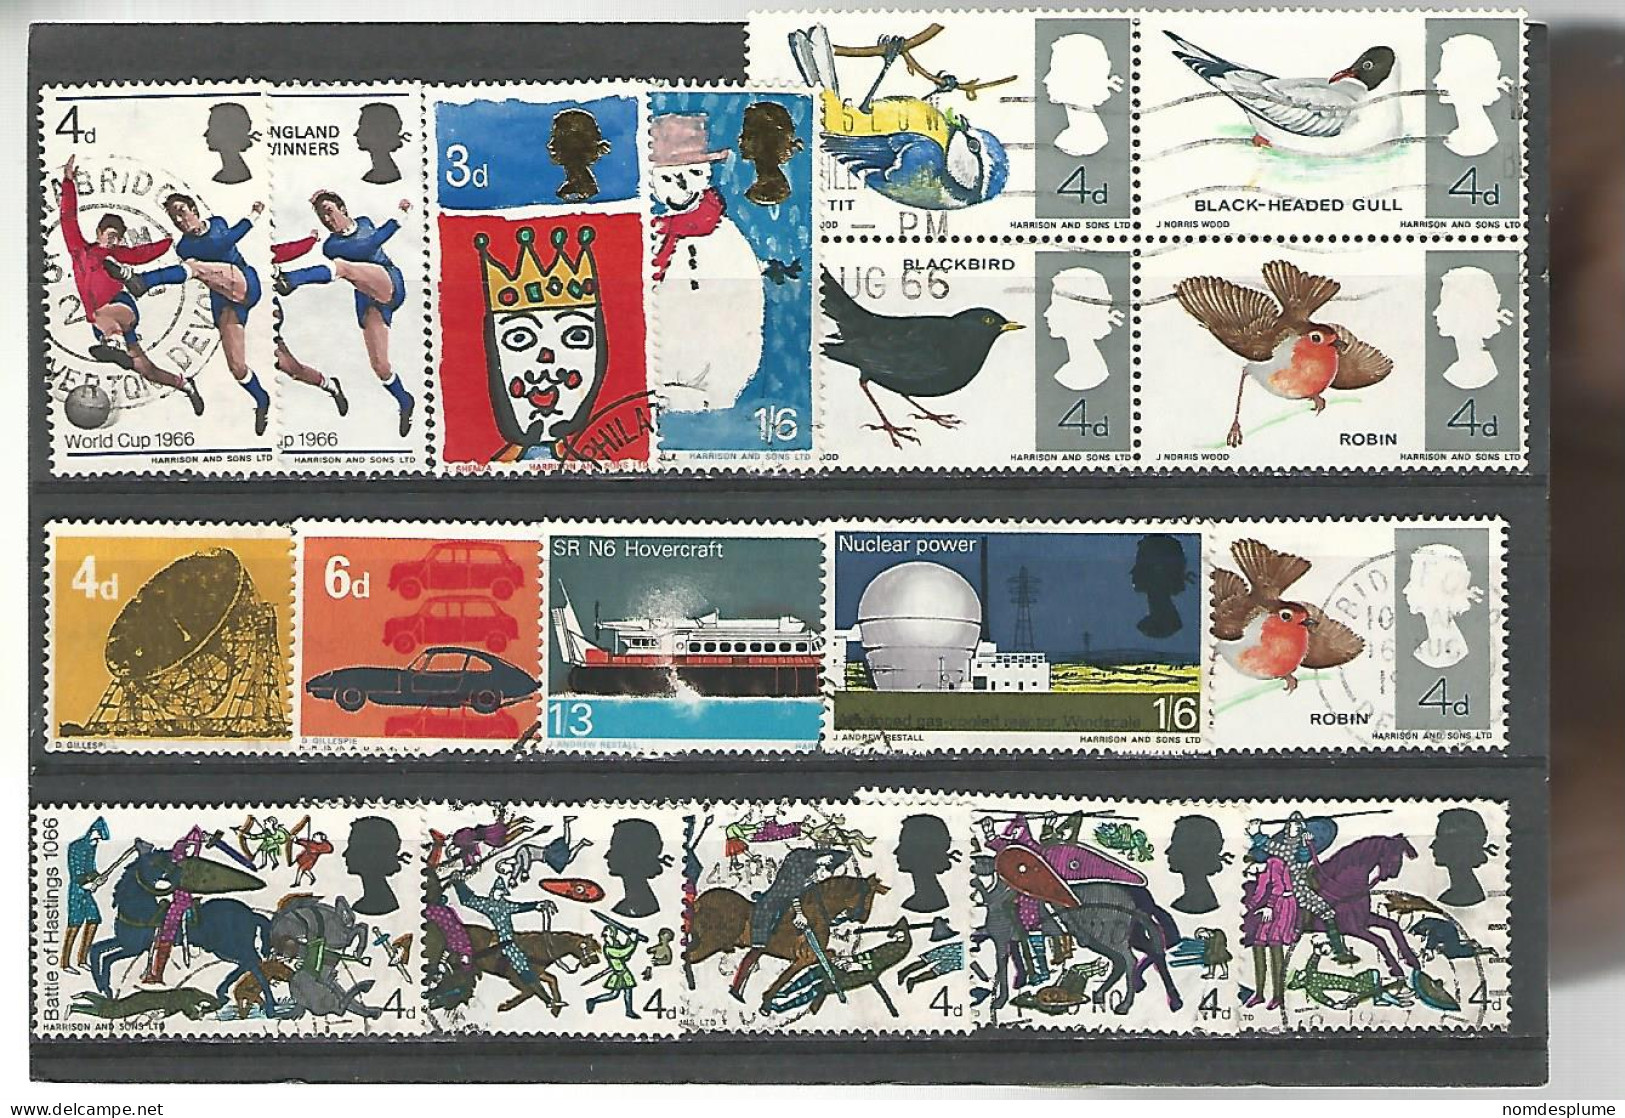 51637 ) Collection Great Britain - Sammlungen